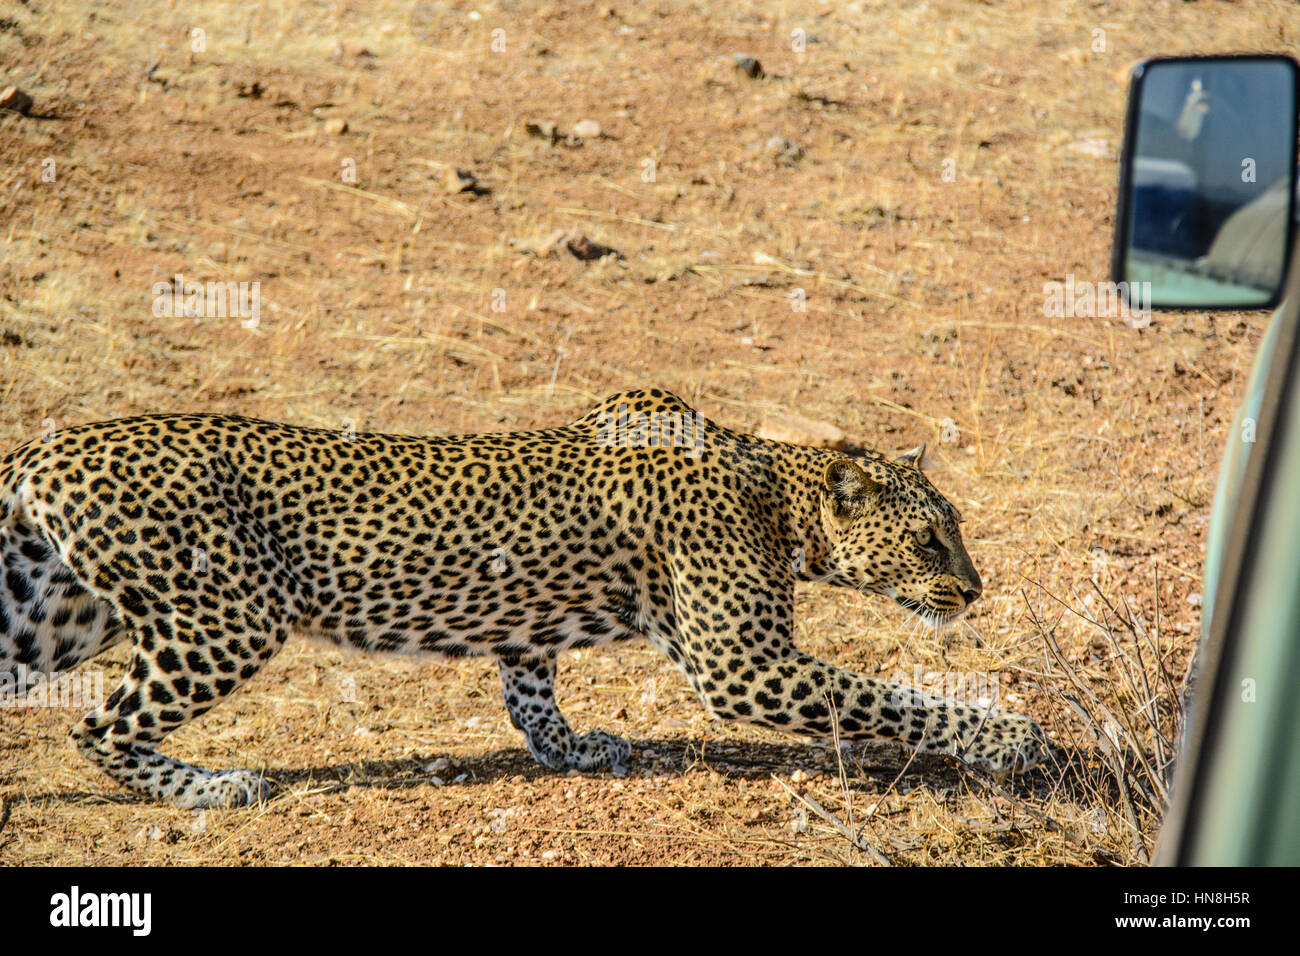 Erwachsenen wilden afrikanischen Leoparden, Panthera Pardus, schleichen Vergangenheit ein Safari-Fahrzeug in Samburu, Nord-Kenia, Afrika, Leopard Jagd Verhalten Stockfoto